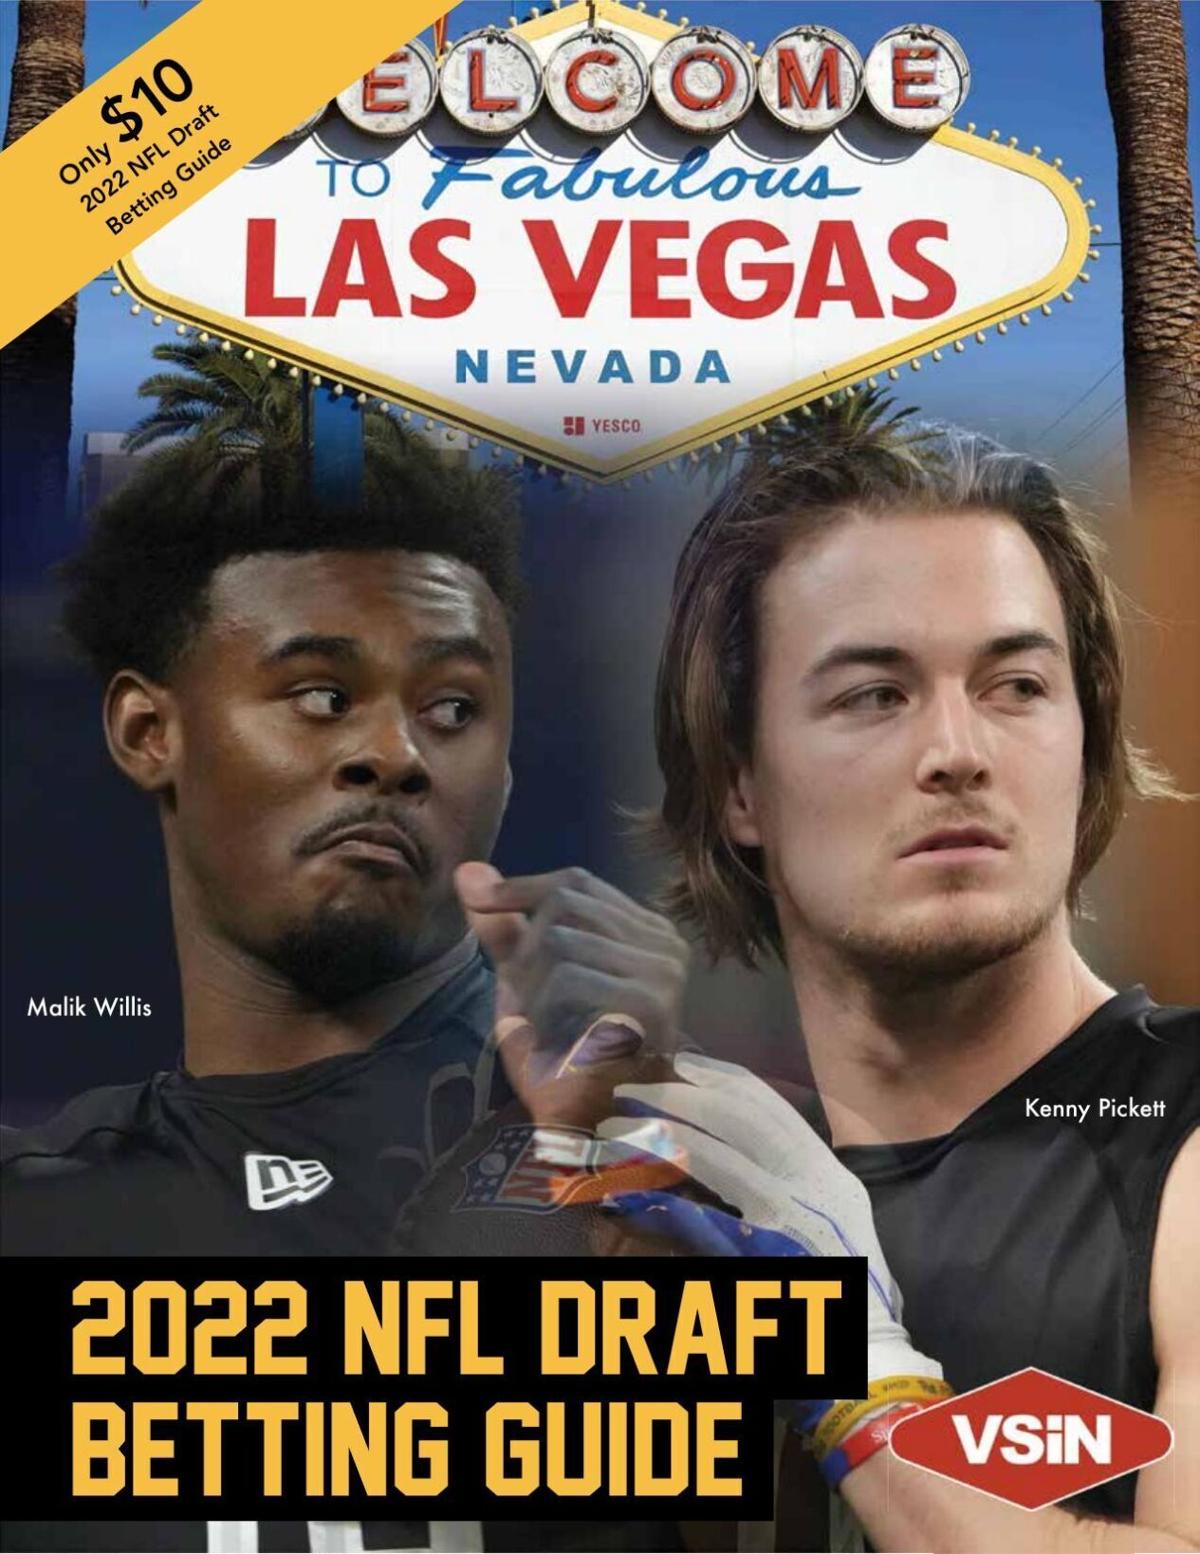 2022 VSiN NFL Draft Guide